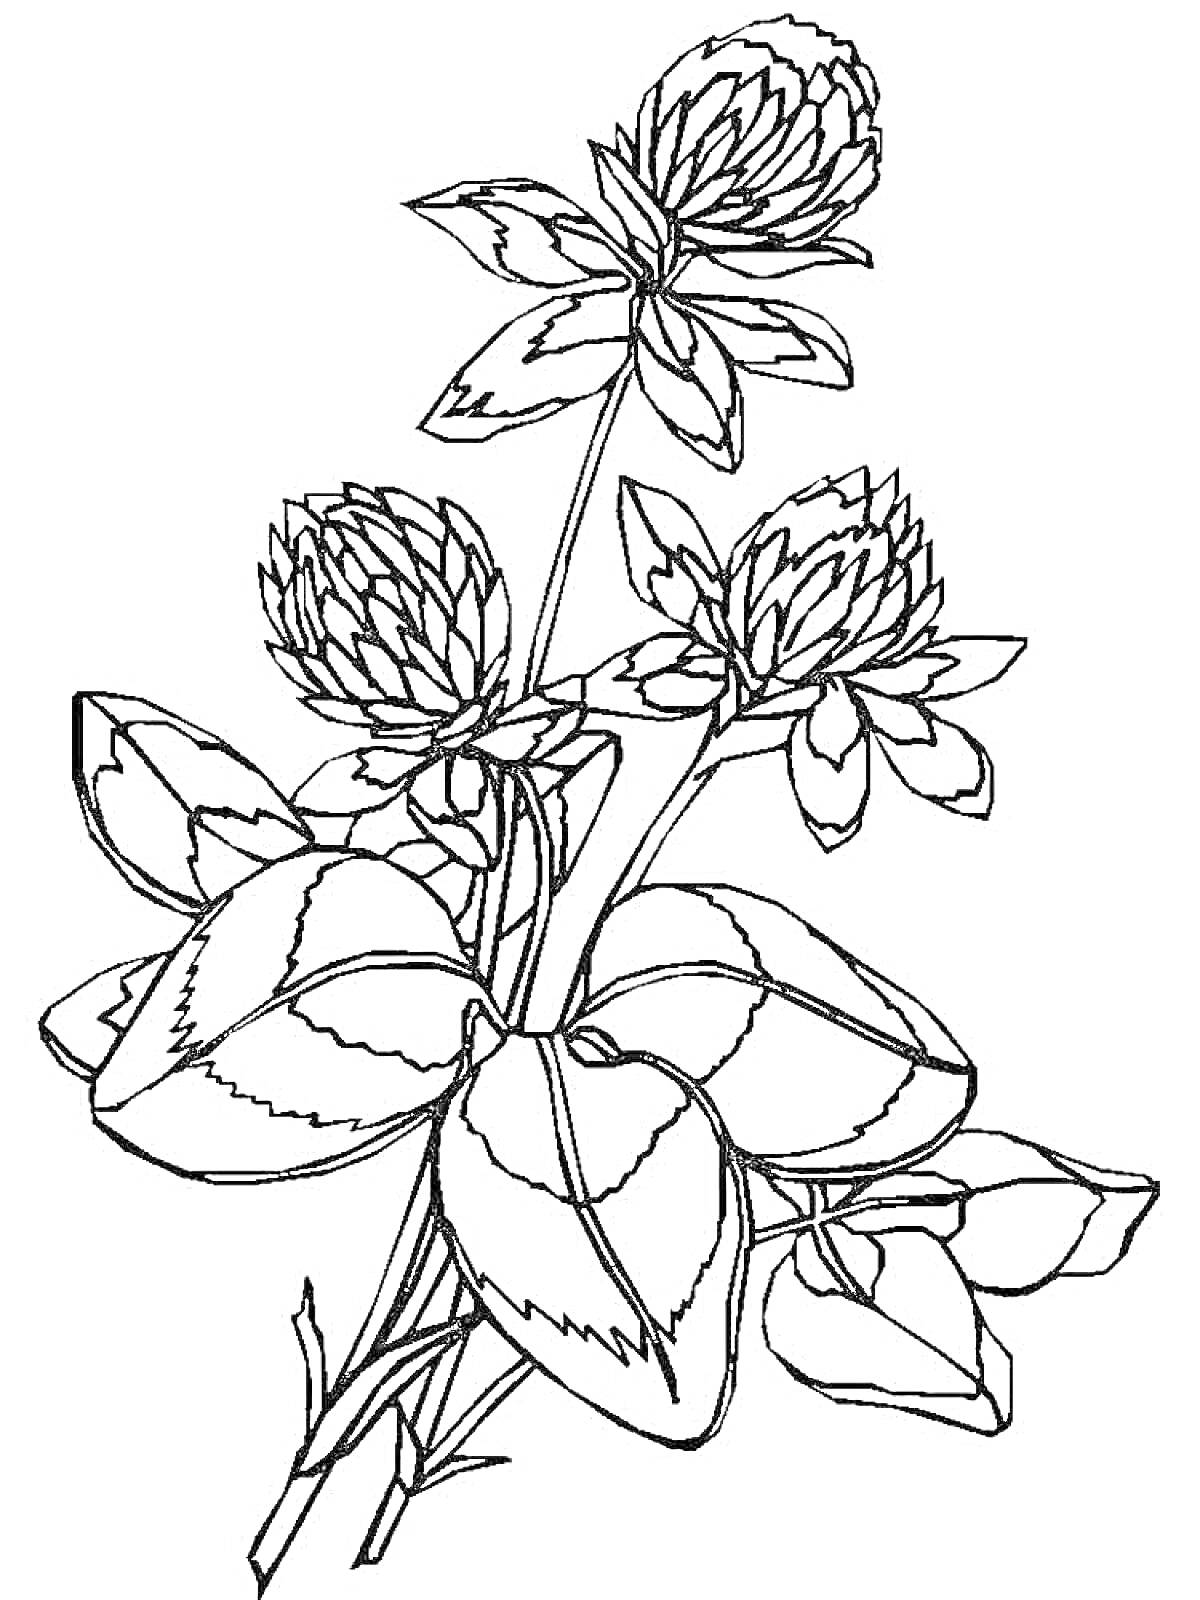 Раскраска Раскраска с клевером, включающая три цветка клевера и несколько листьев.